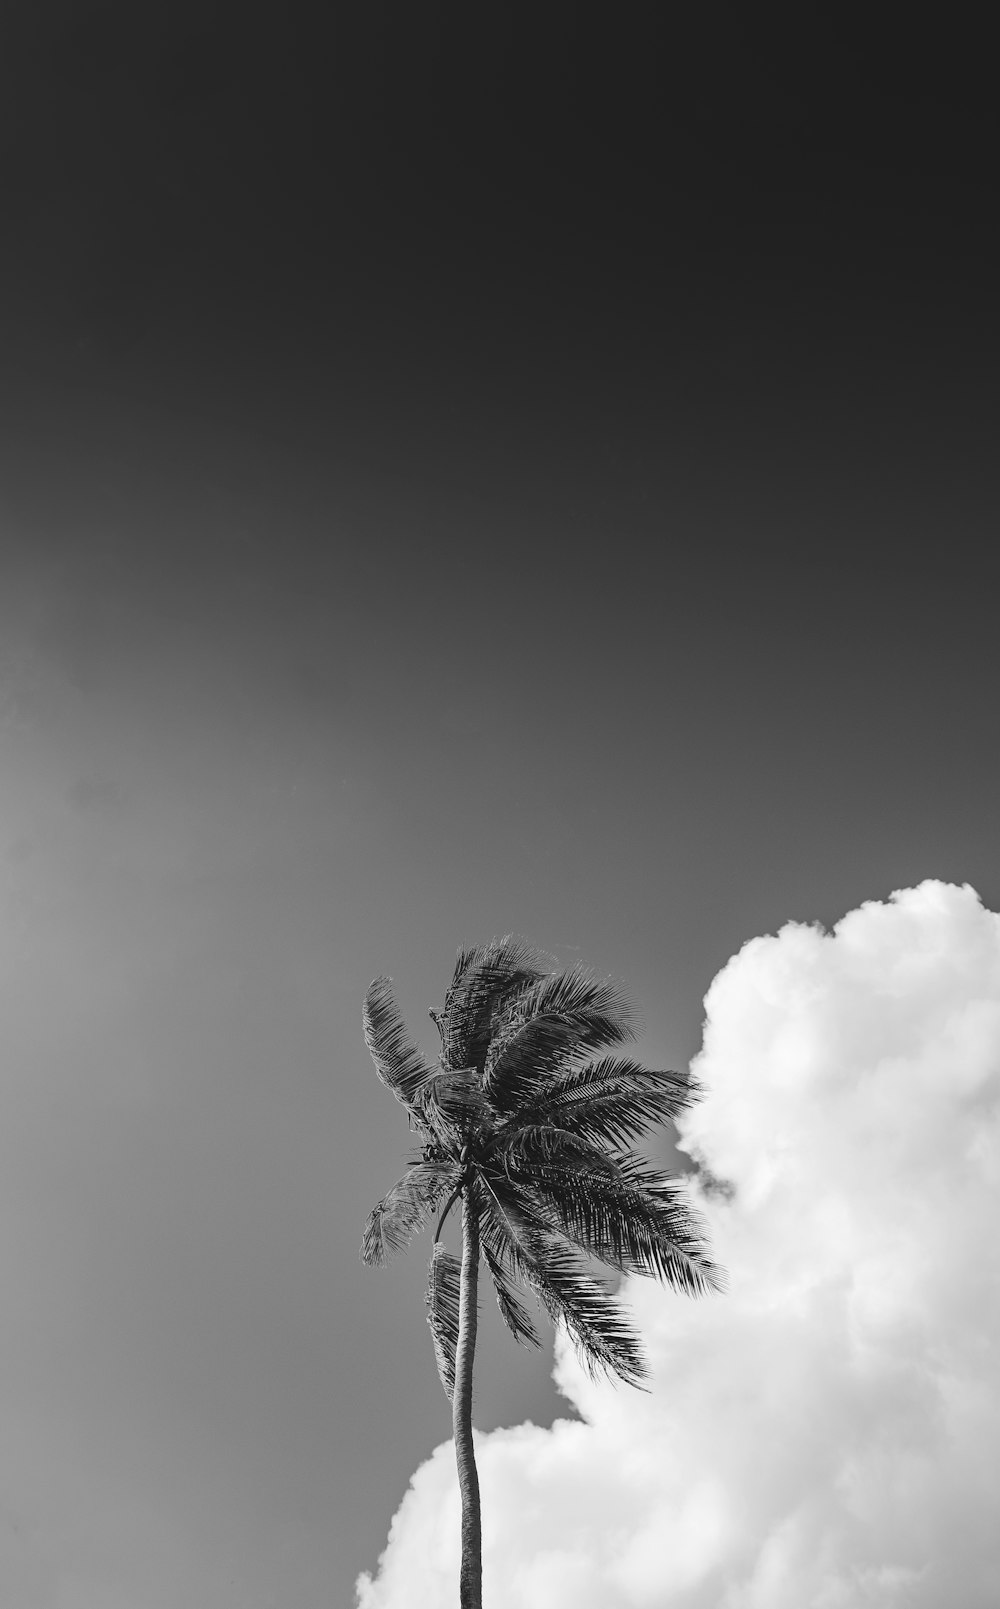 曇り空の下のヤシの木のグレースケール写真